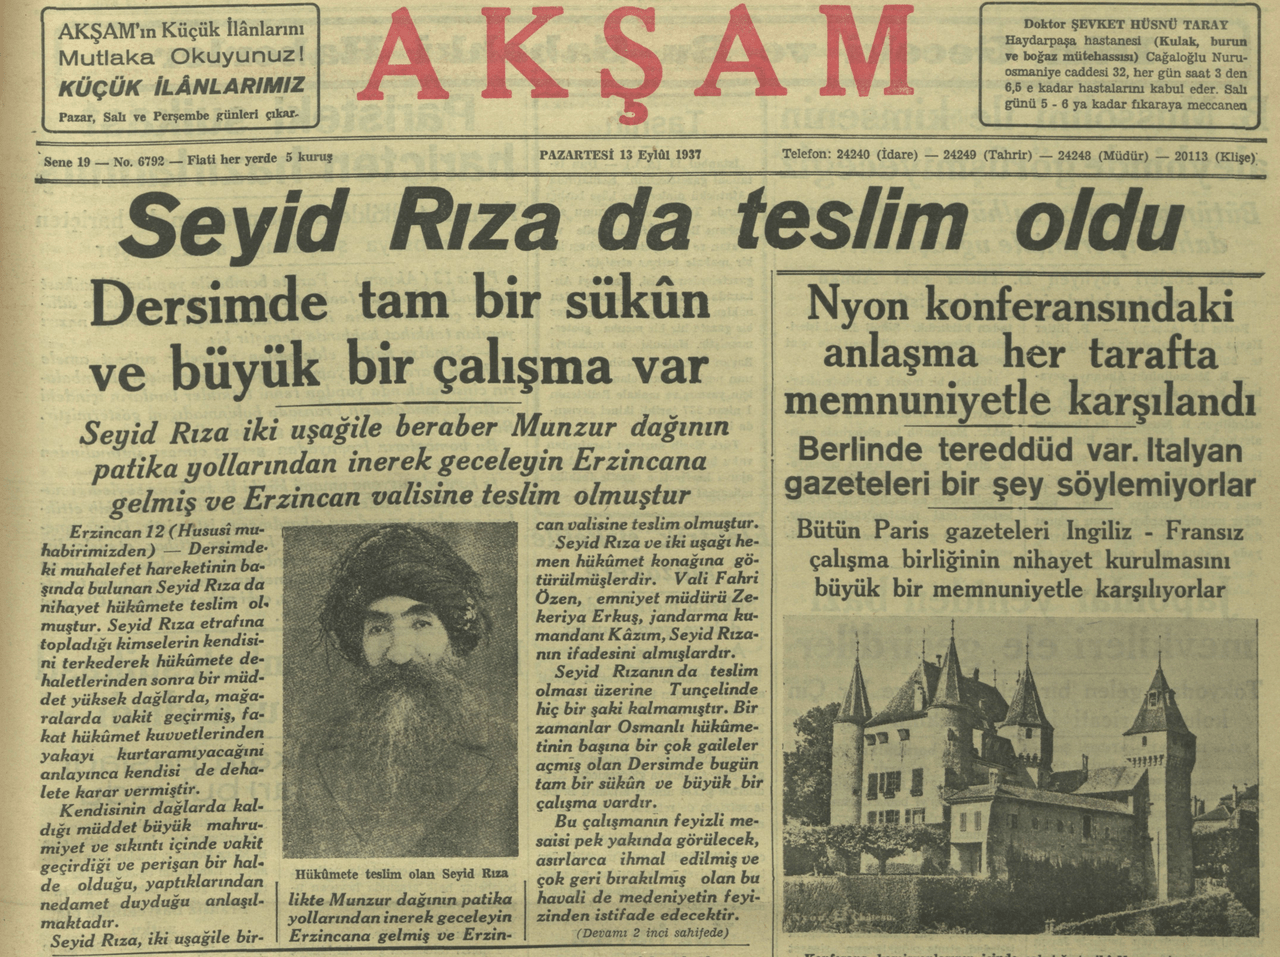 عنوان جريدة أكشام صباح ليلة استسلام سيد رضا عام 1937.